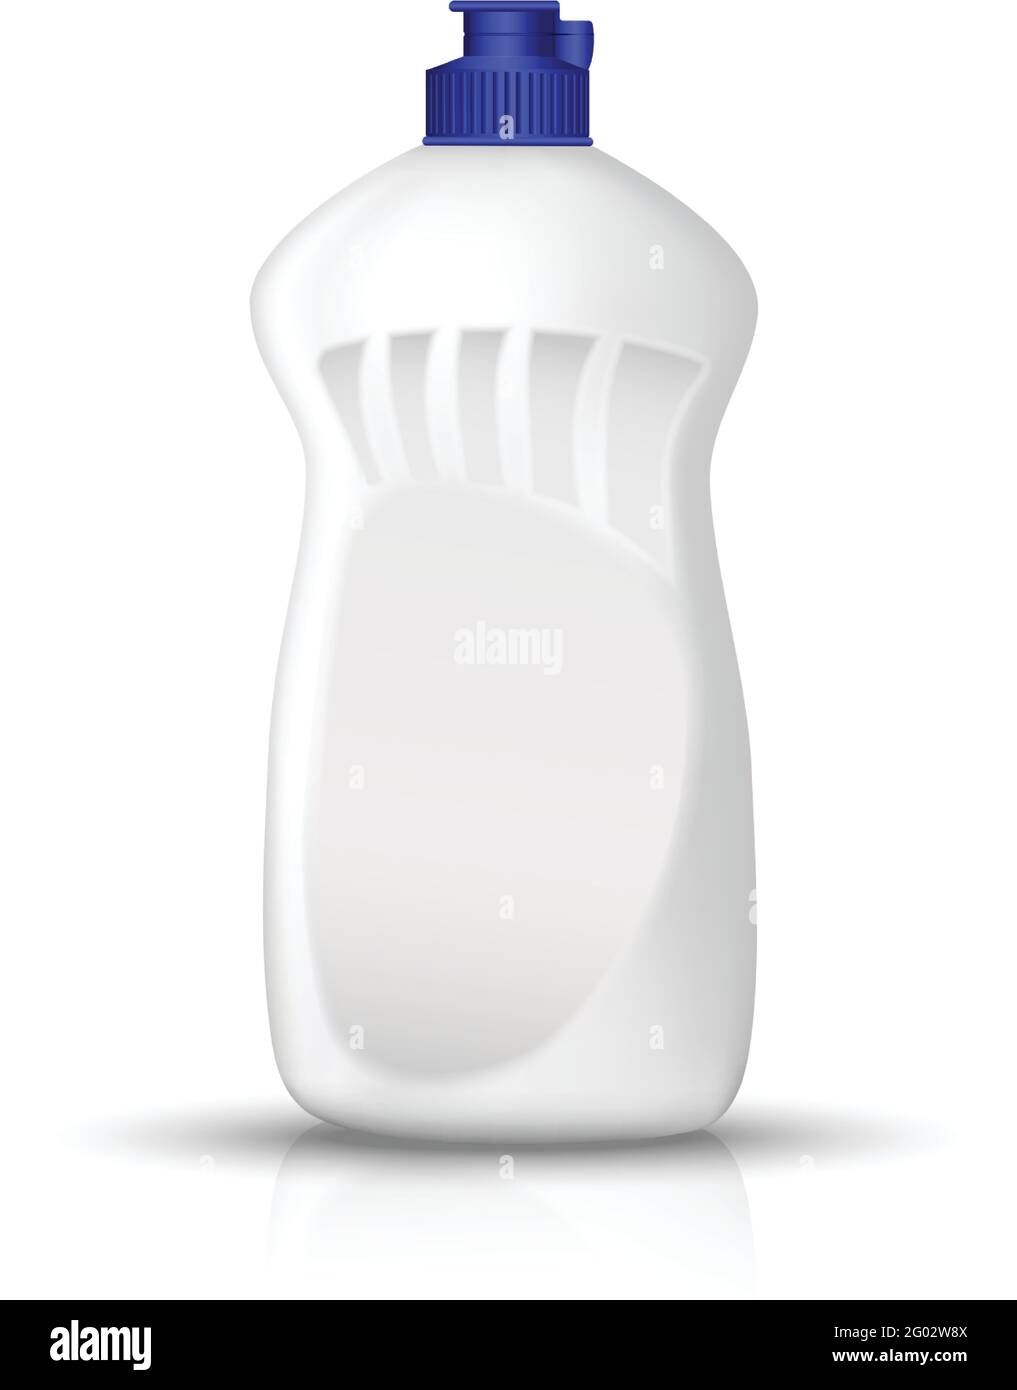 flacone bianco vettoriale realistico di liquido di lavaggio della capsula. Utensili da cucina e prodotti per il lavaggio. Illustrazione isolata su bianco. Illustrazione Vettoriale